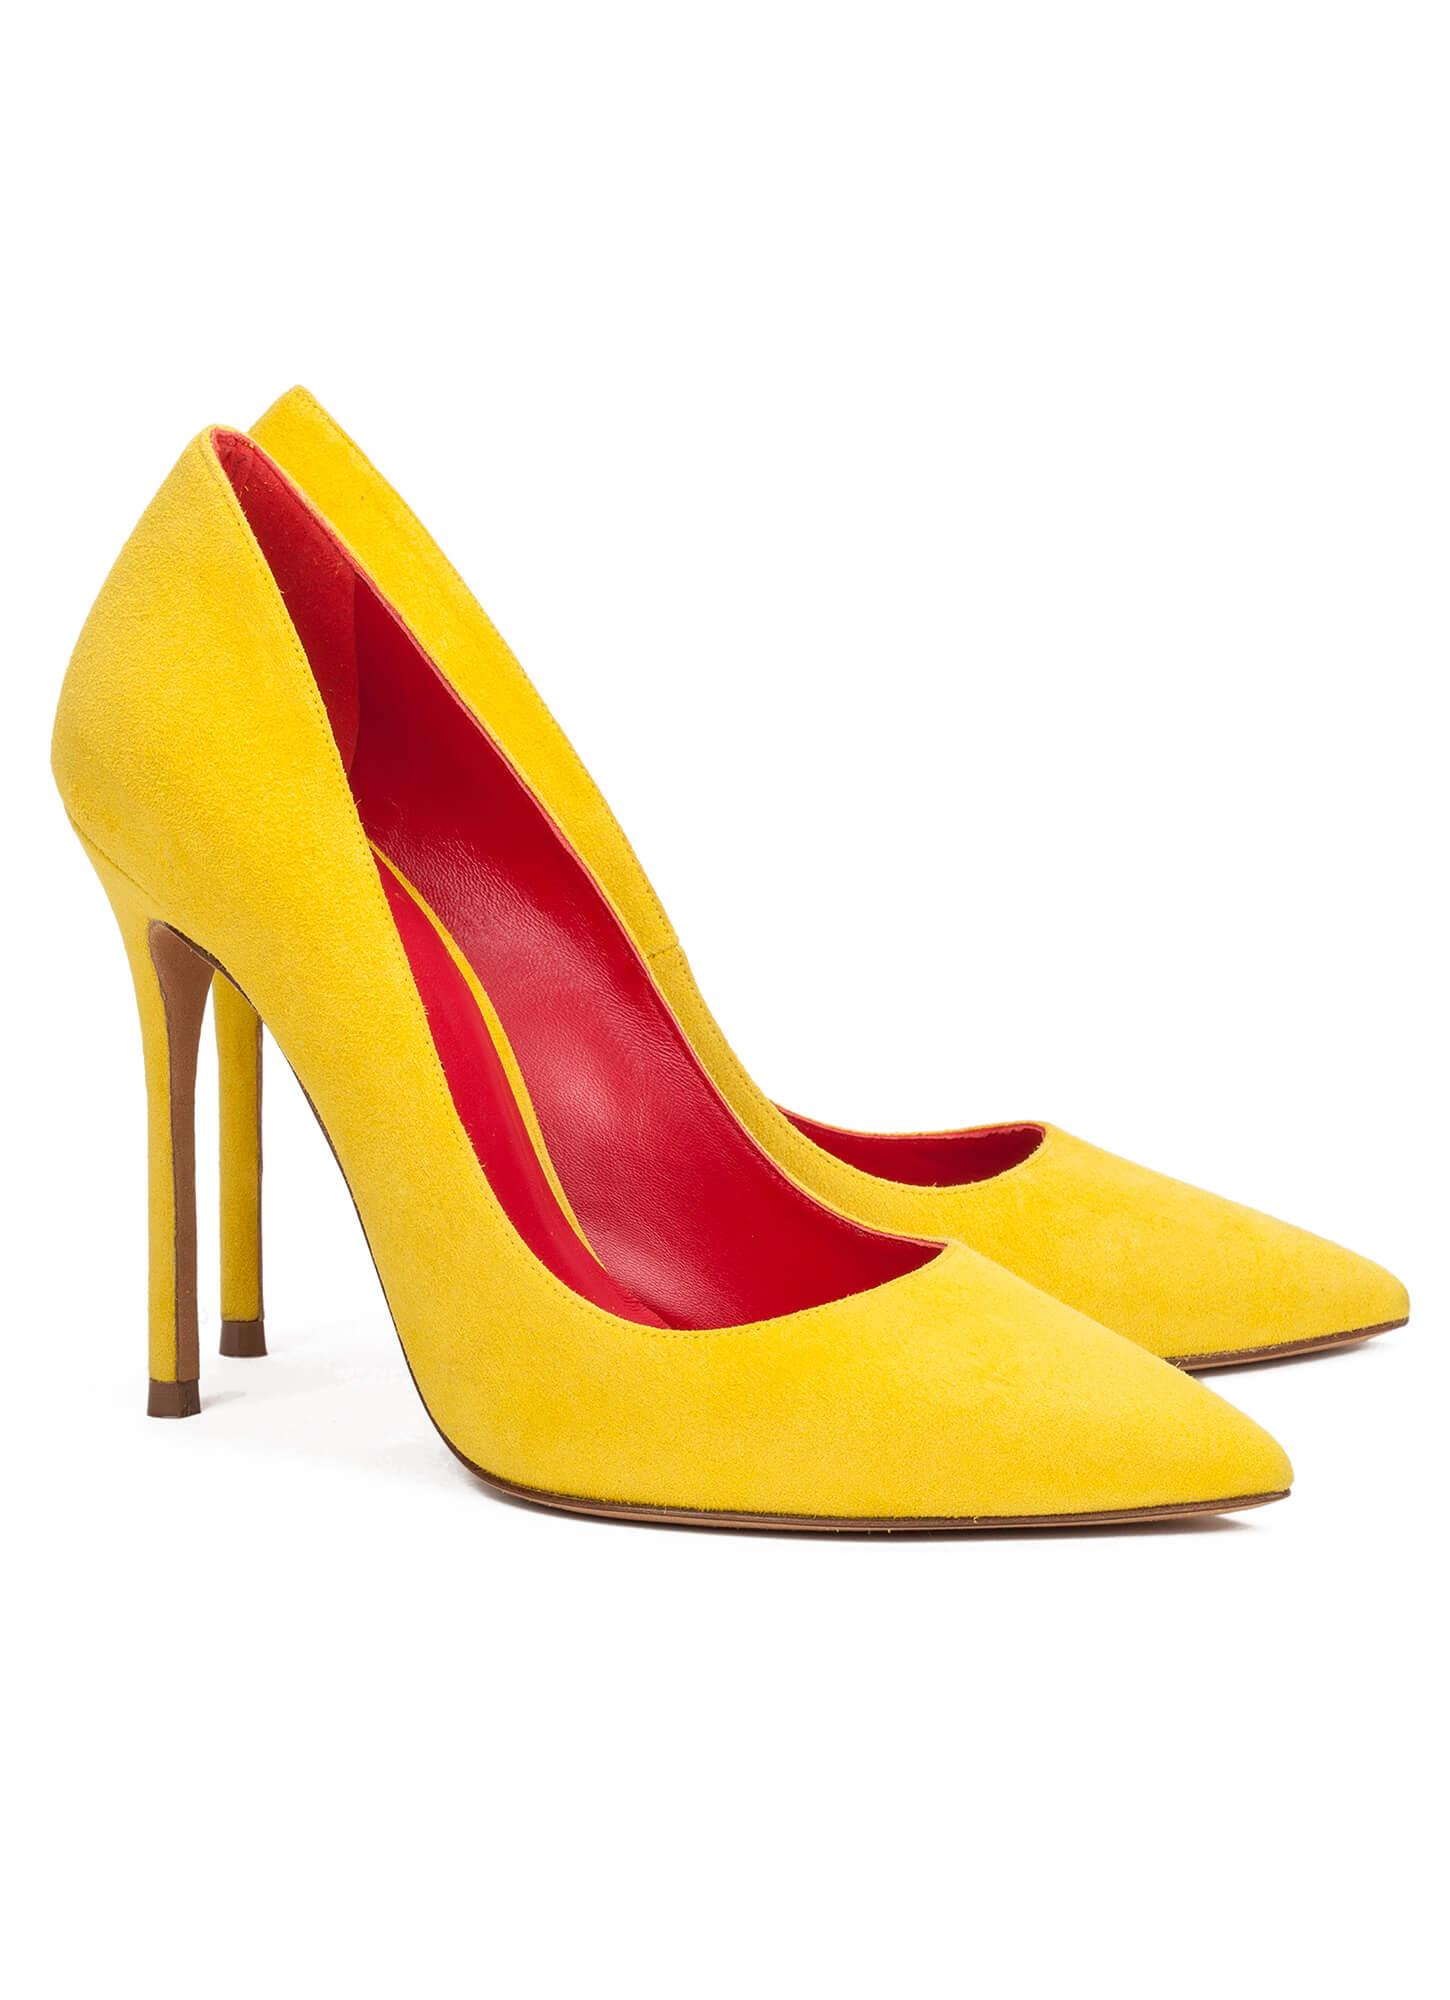 High heel pumps in yellow suede - online shoe store Pura Lopez . PURA LOPEZ